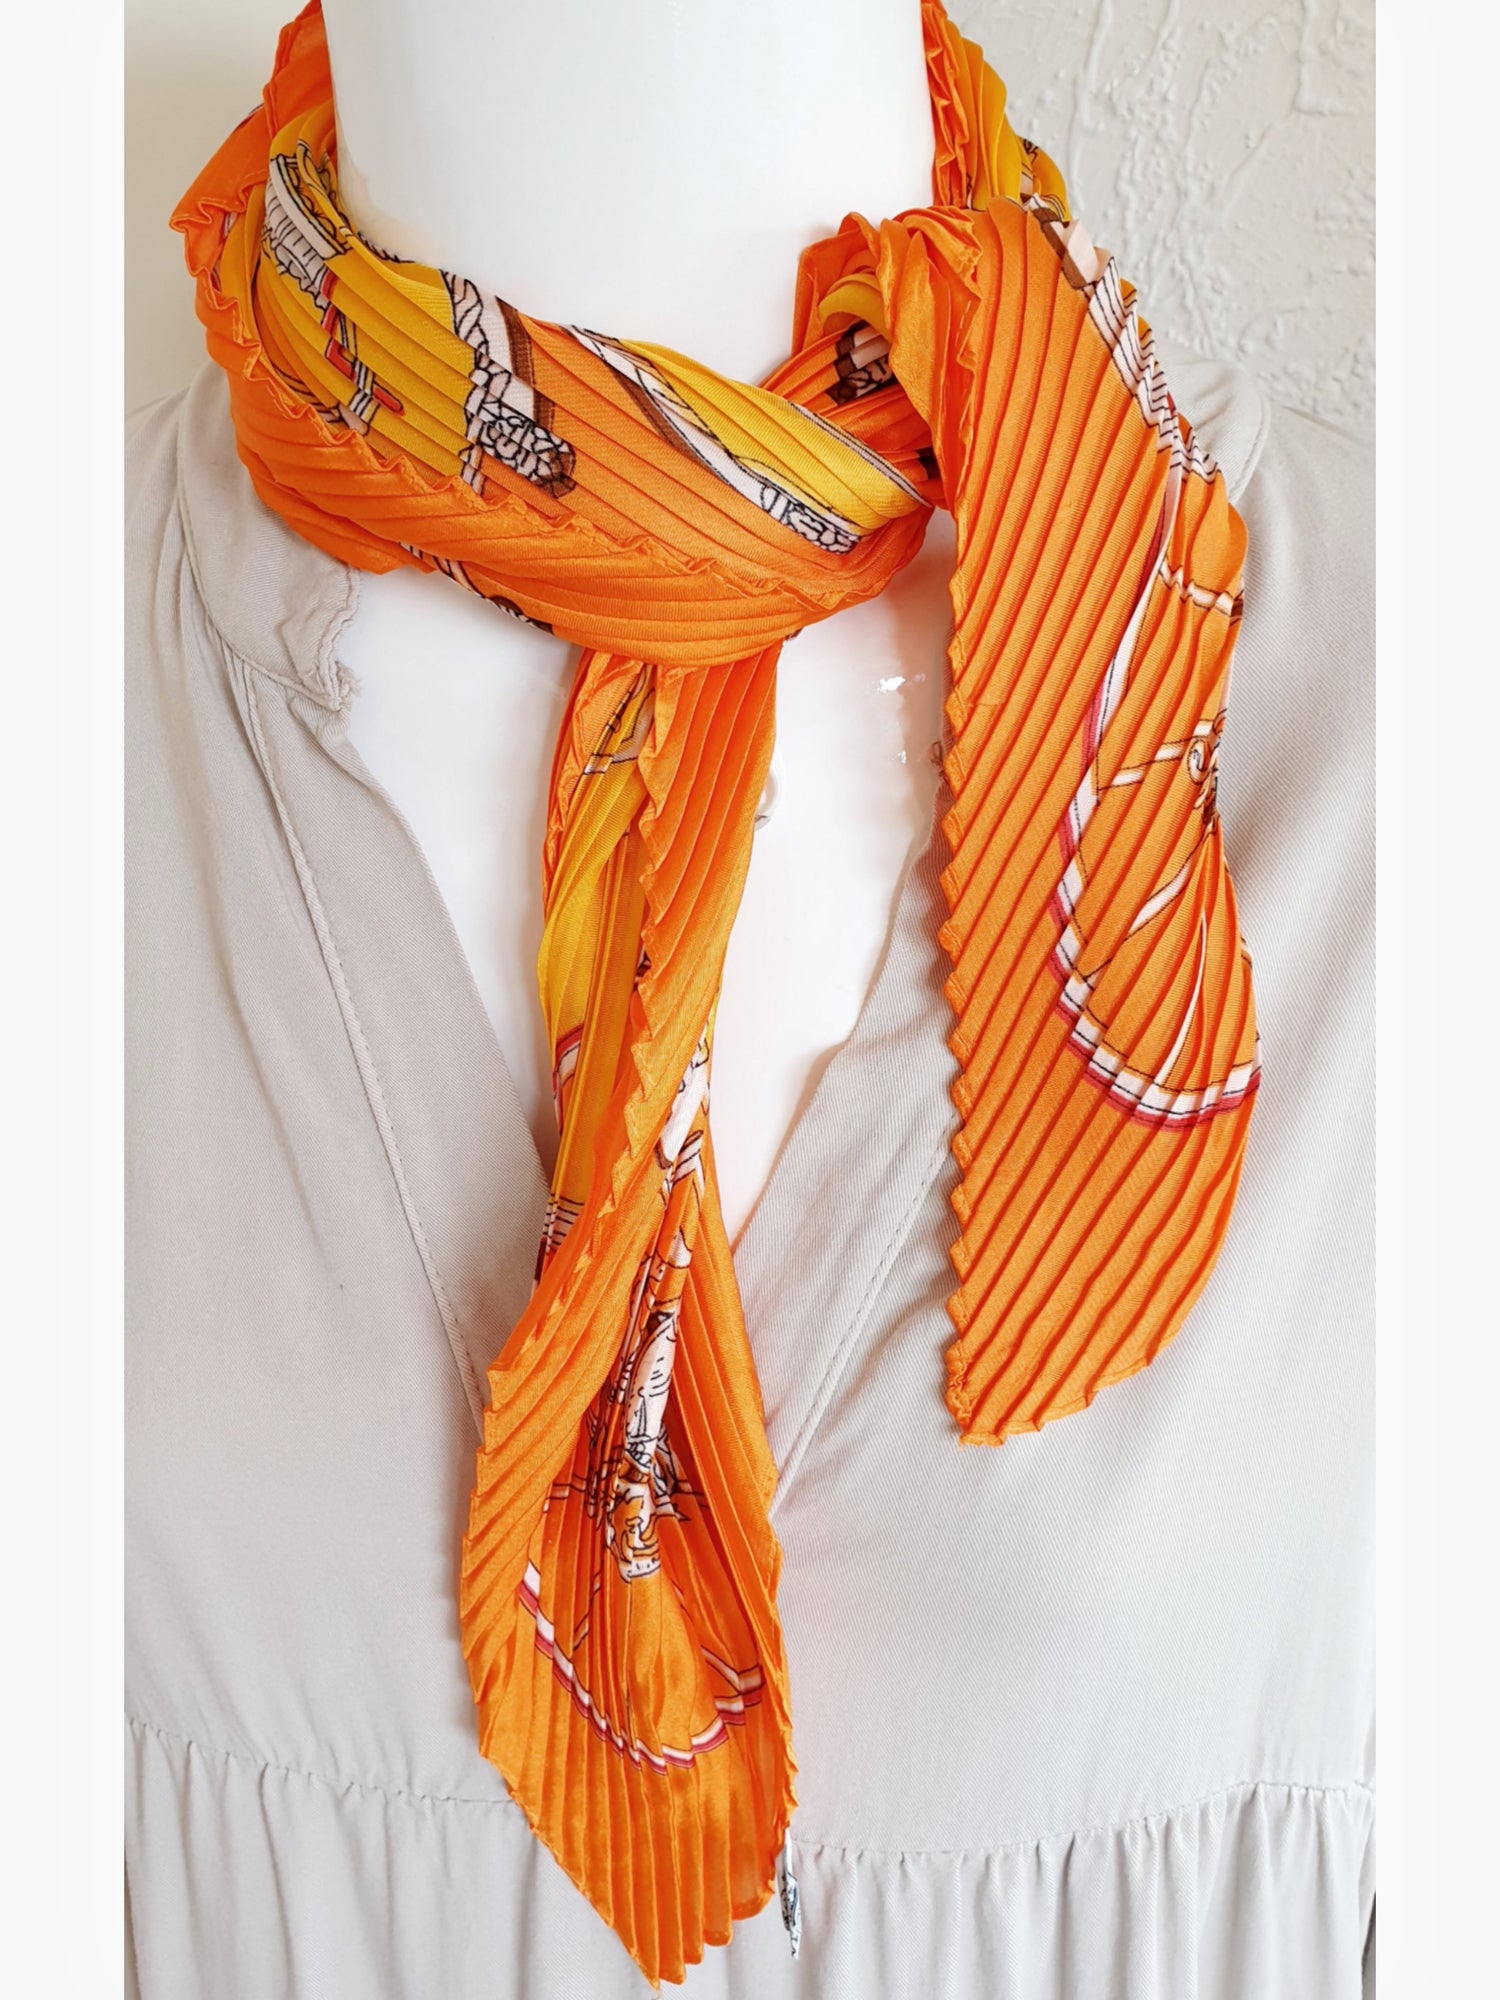 Nickituch im Plissee Look mit Seide in leuchtendem Orange und Gelb und Pferdemotiv